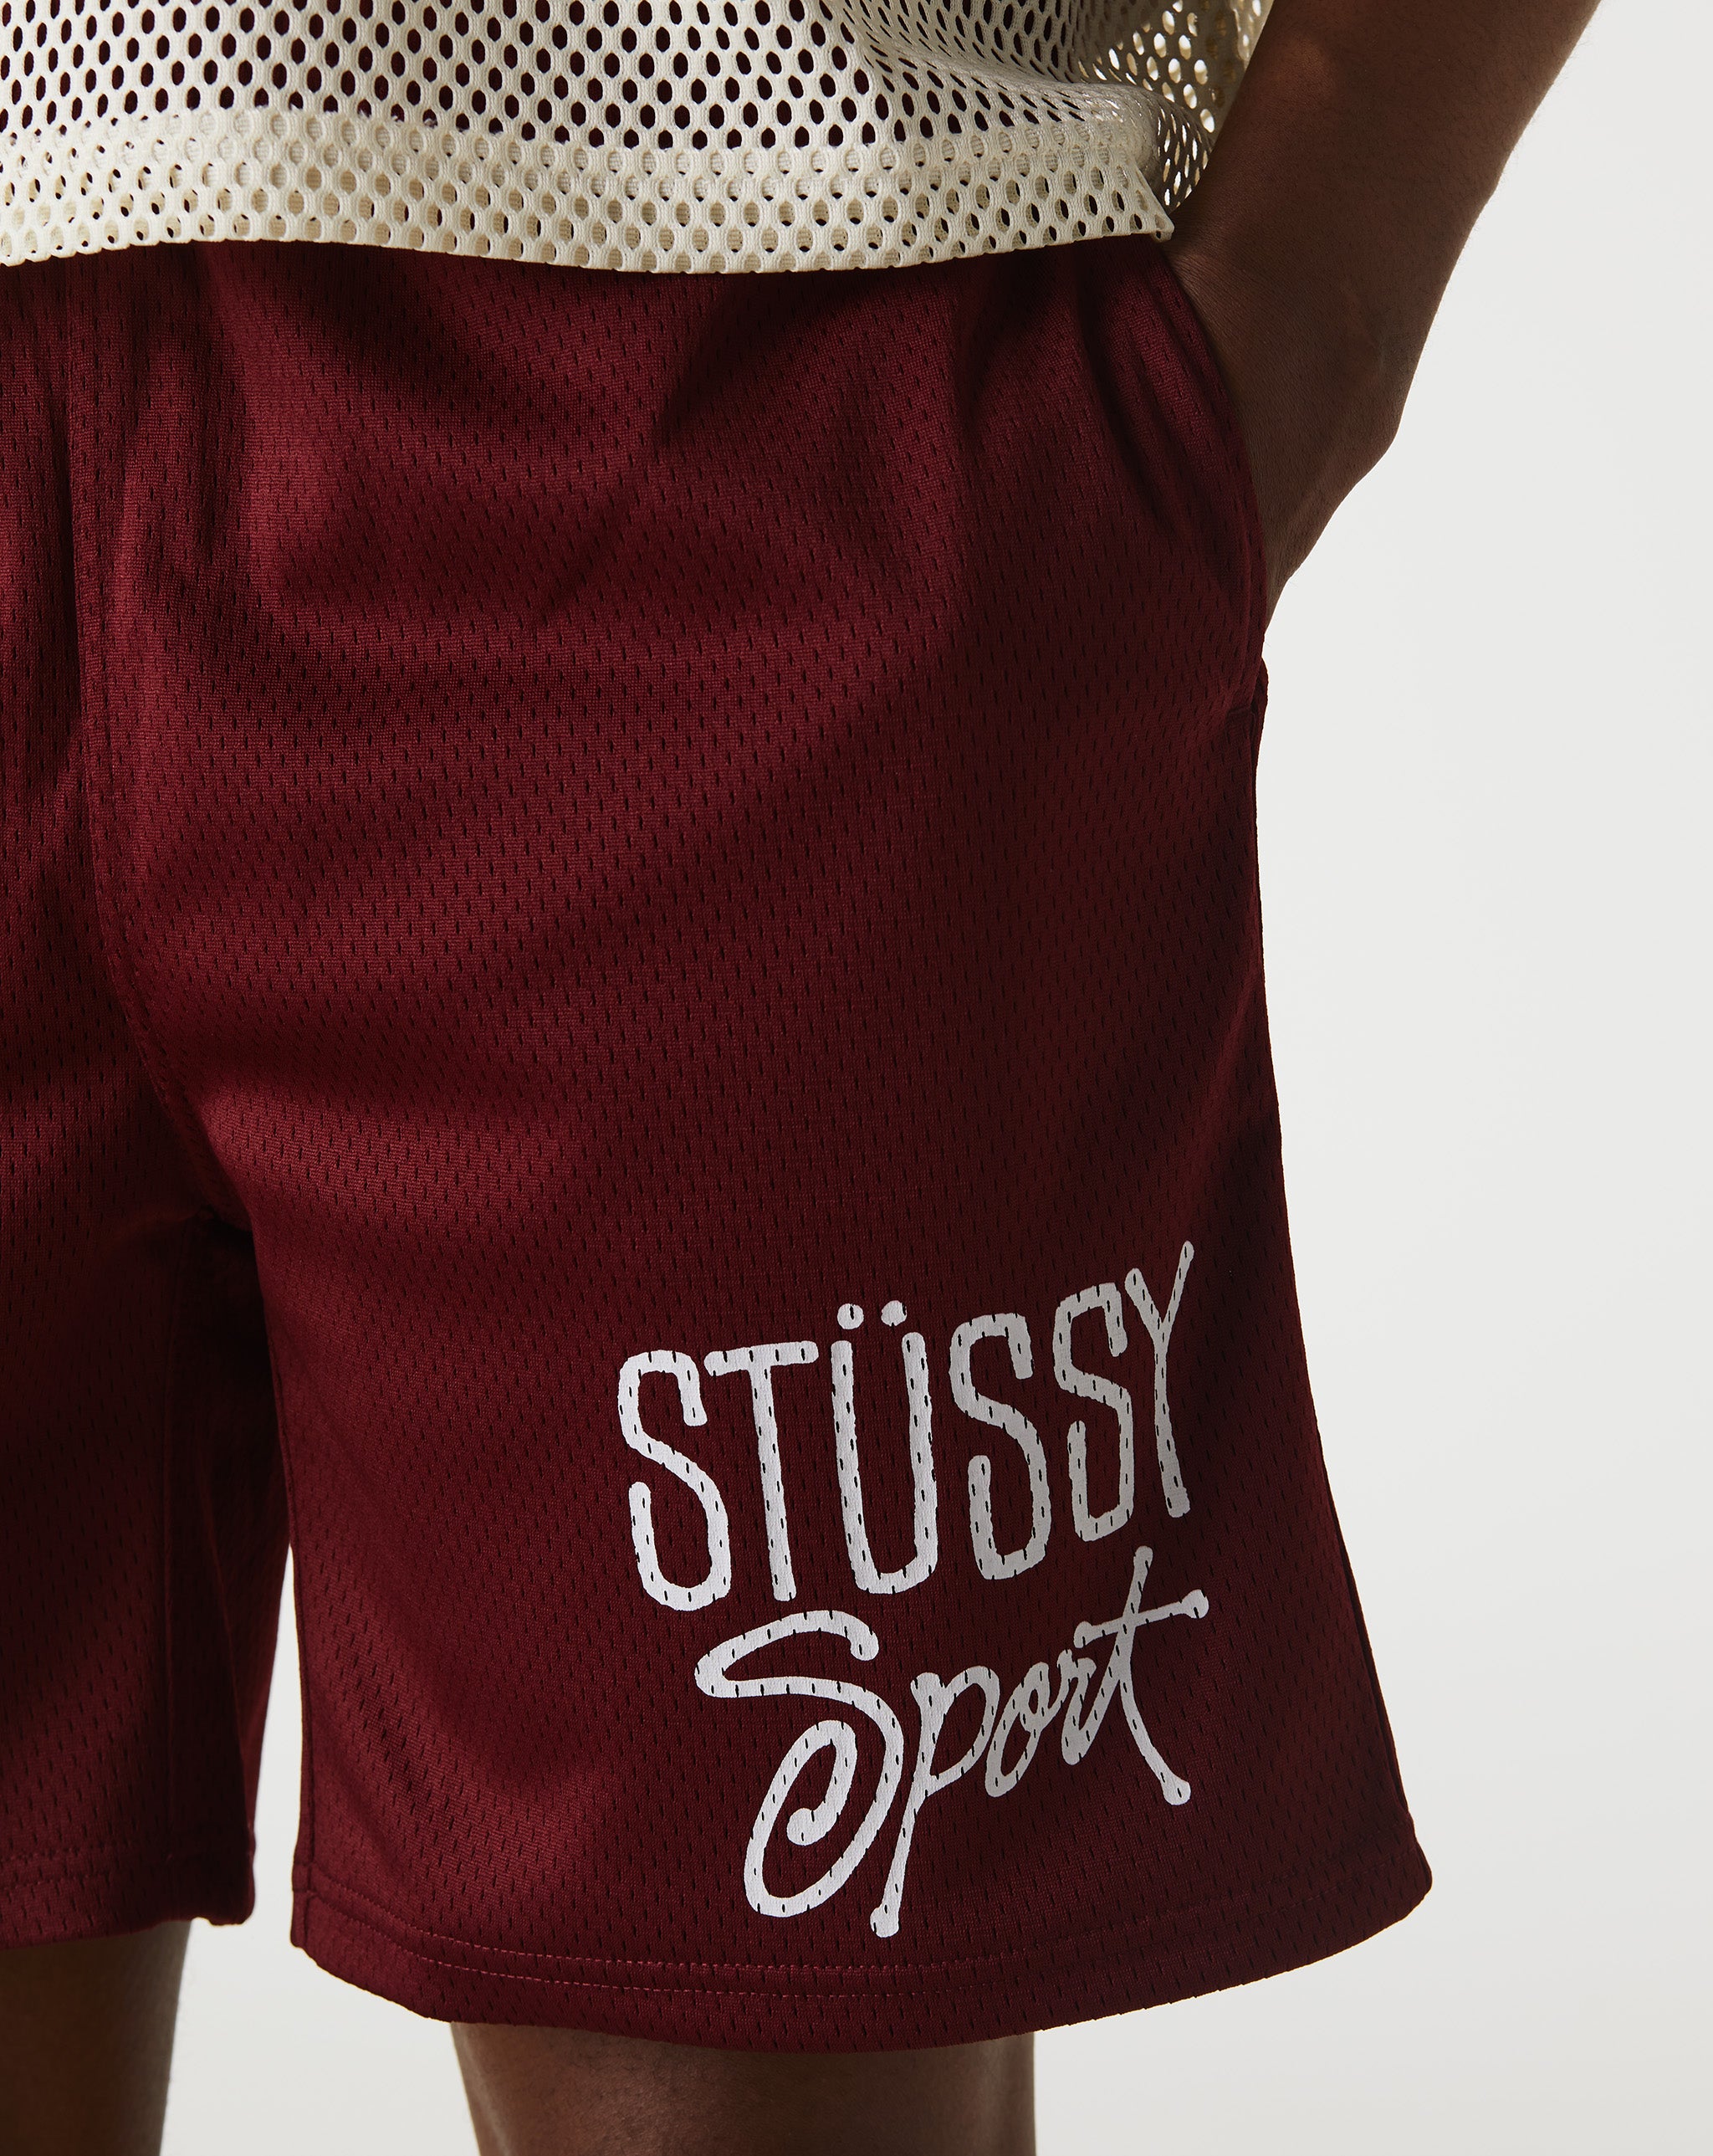 Stüssy Mesh Sport Shorts  - XHIBITION